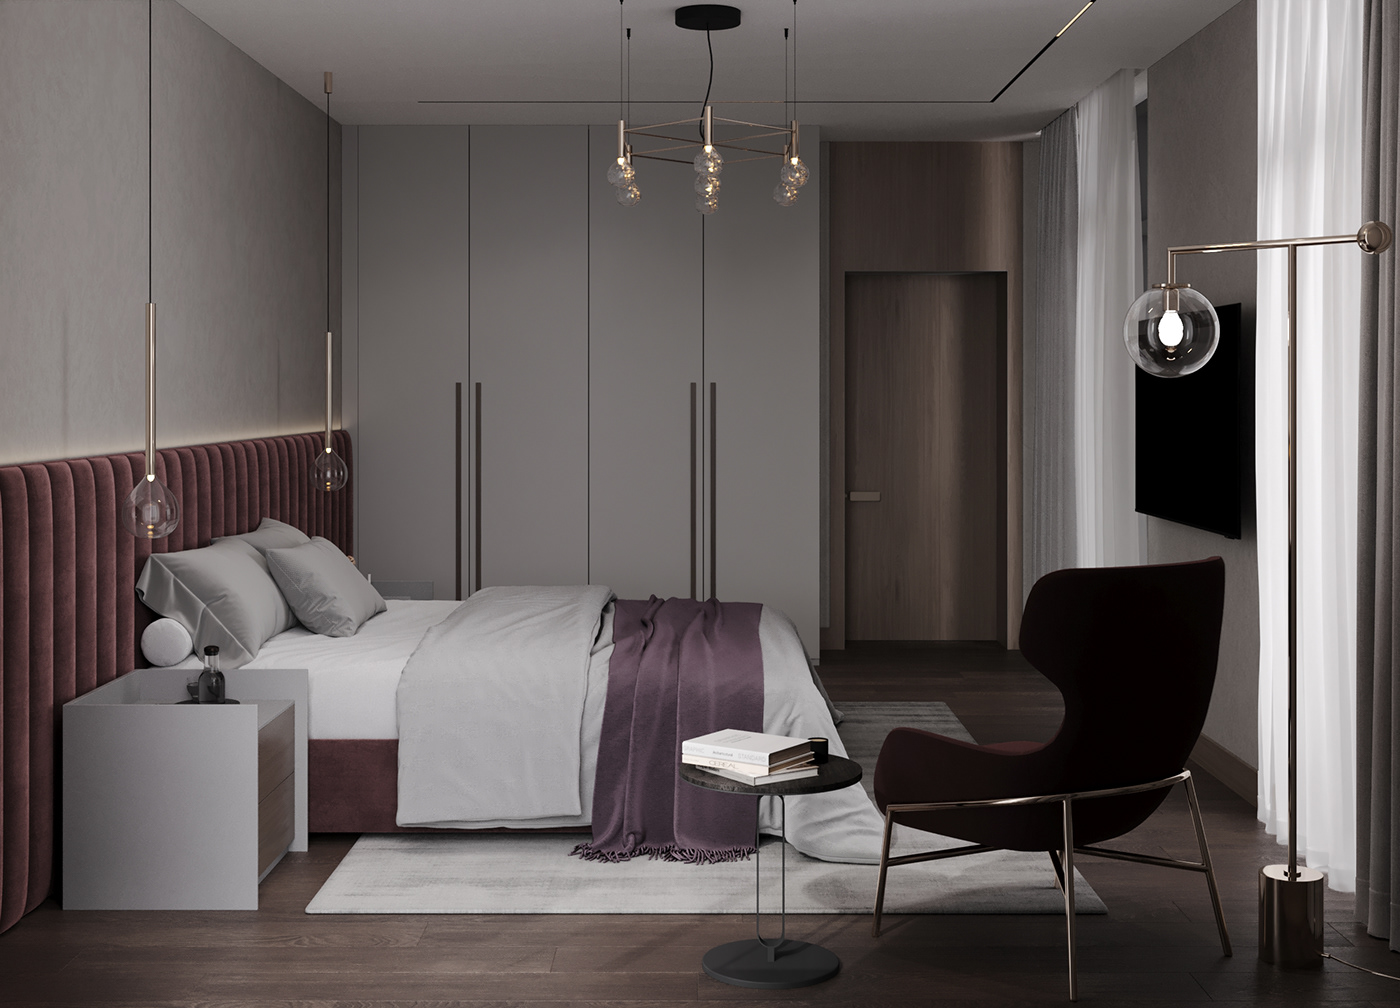 bedroom bedroom design visualization спальня дизайн спальня интерьер дизайн интерьера interior design  3ds max визуализация